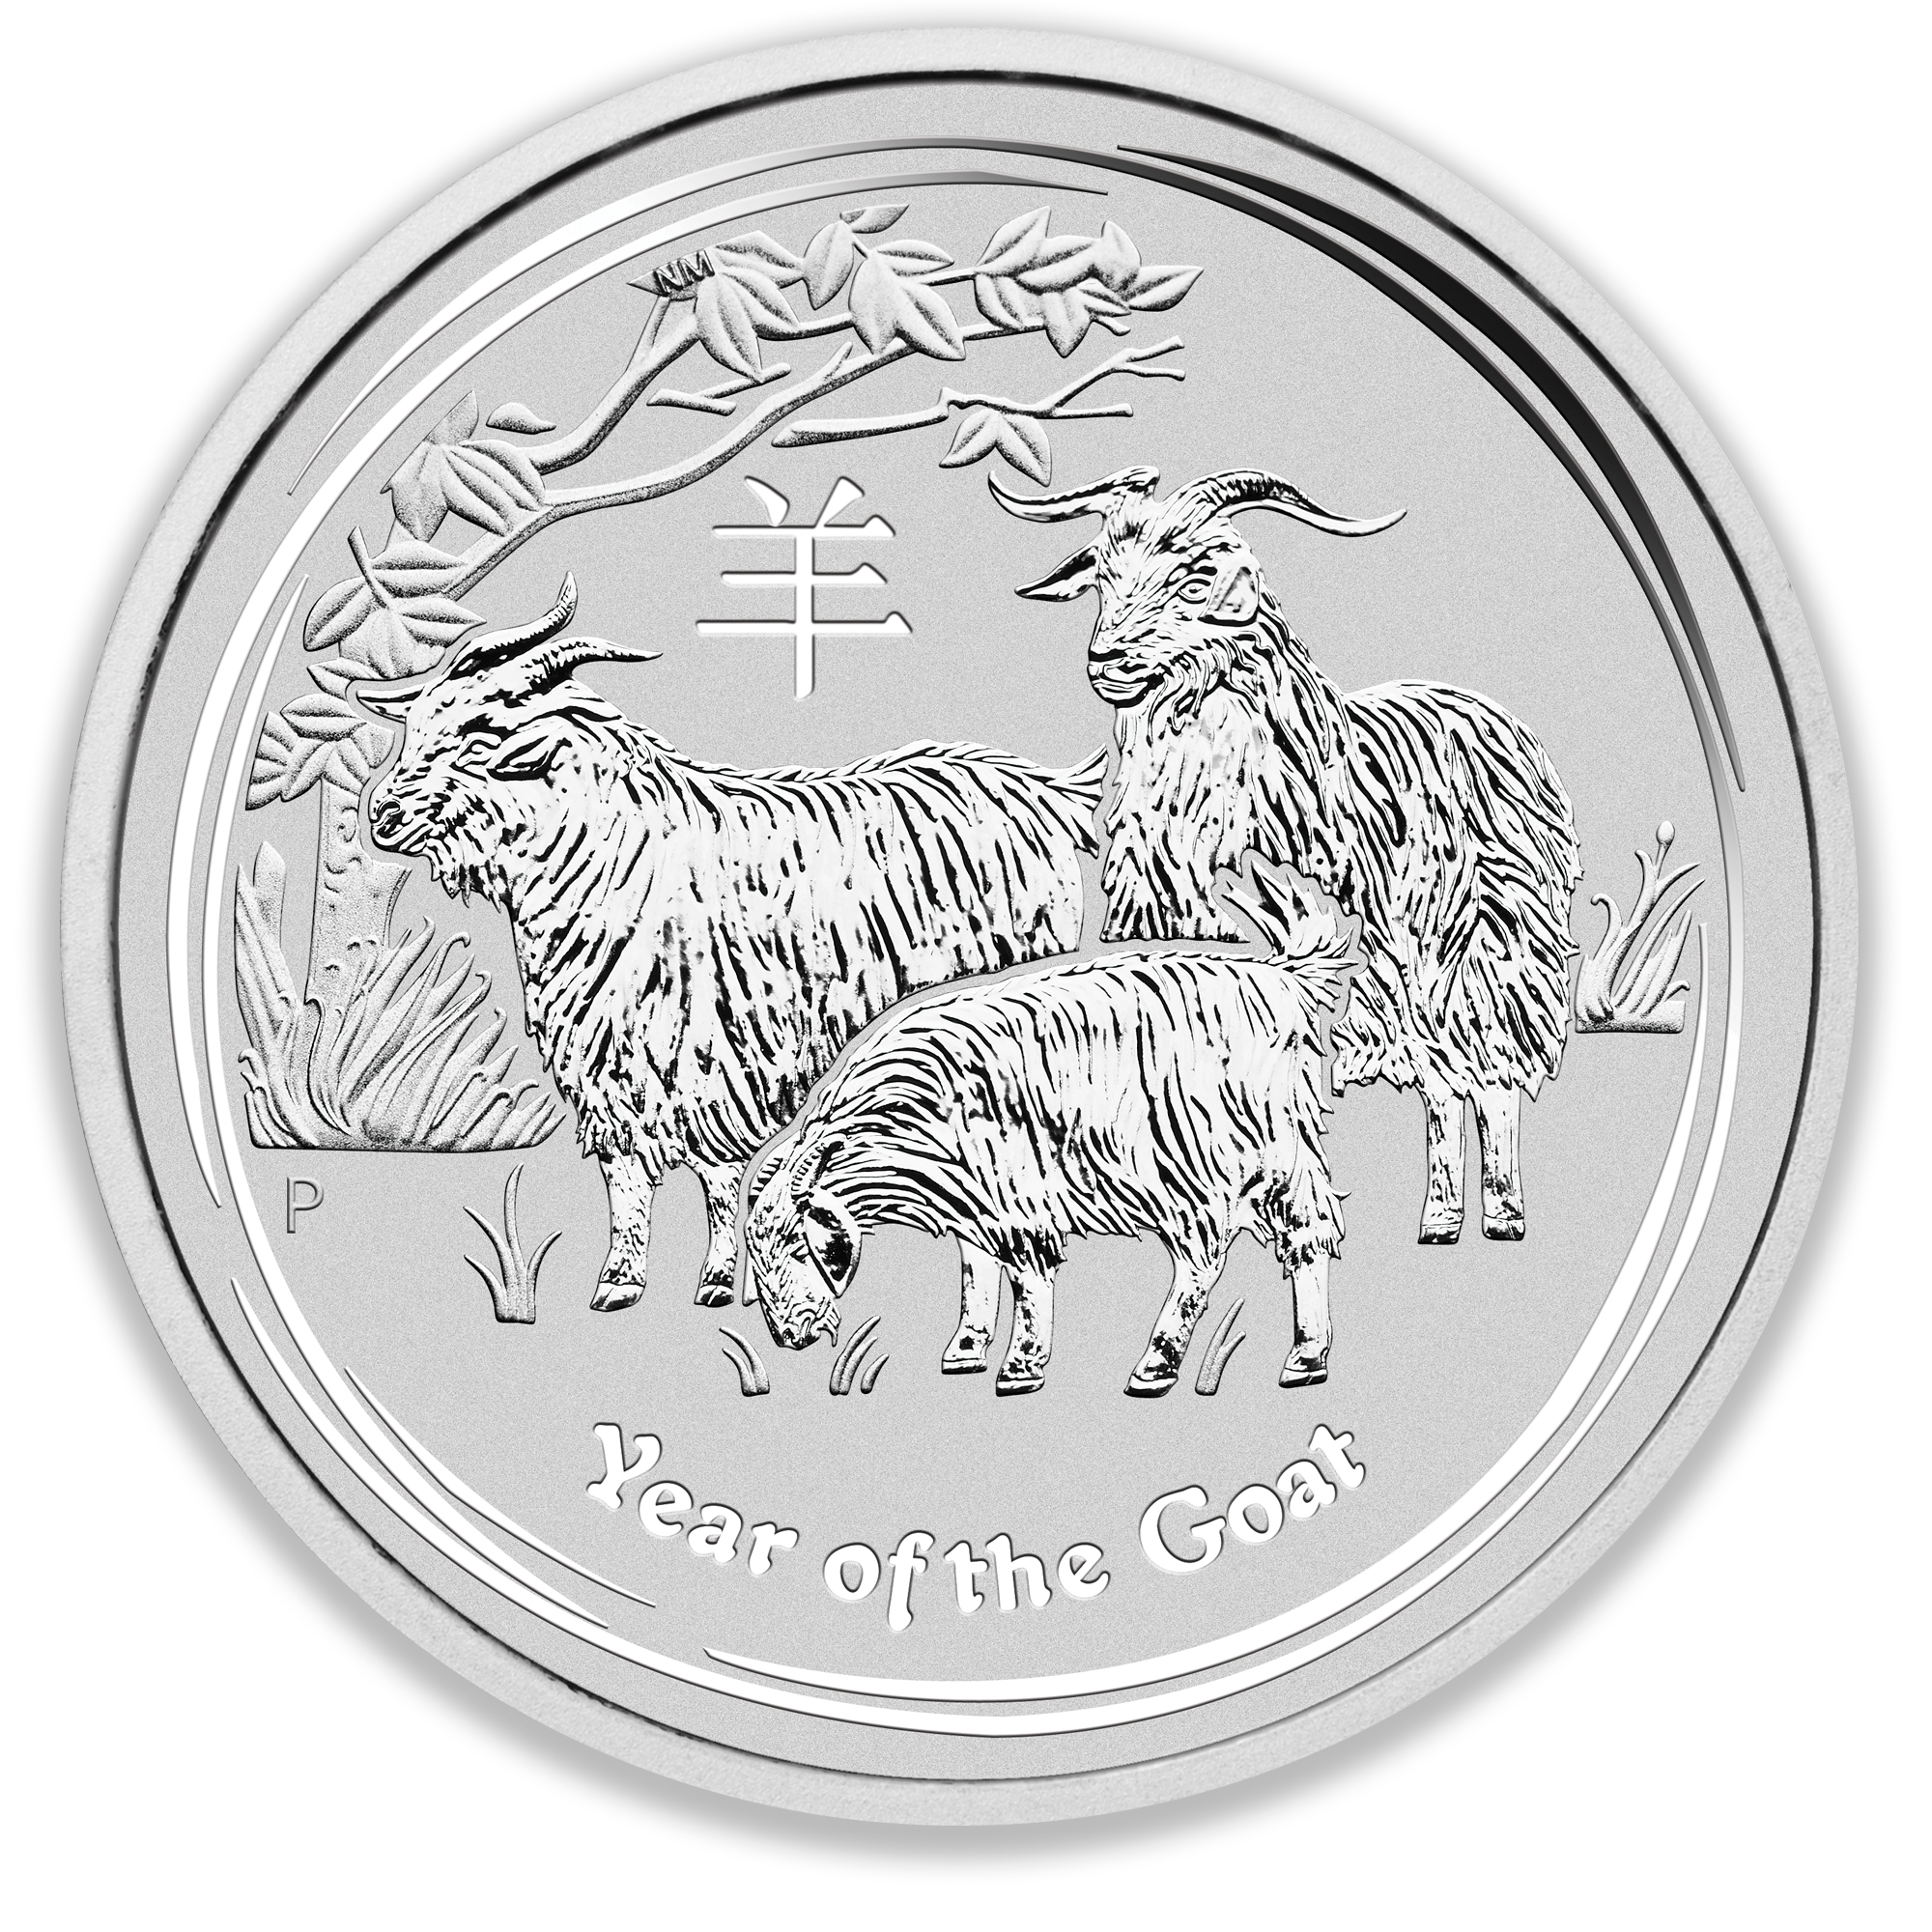 2015 1/2oz Perth Mint Silver Lunar Goat Coin